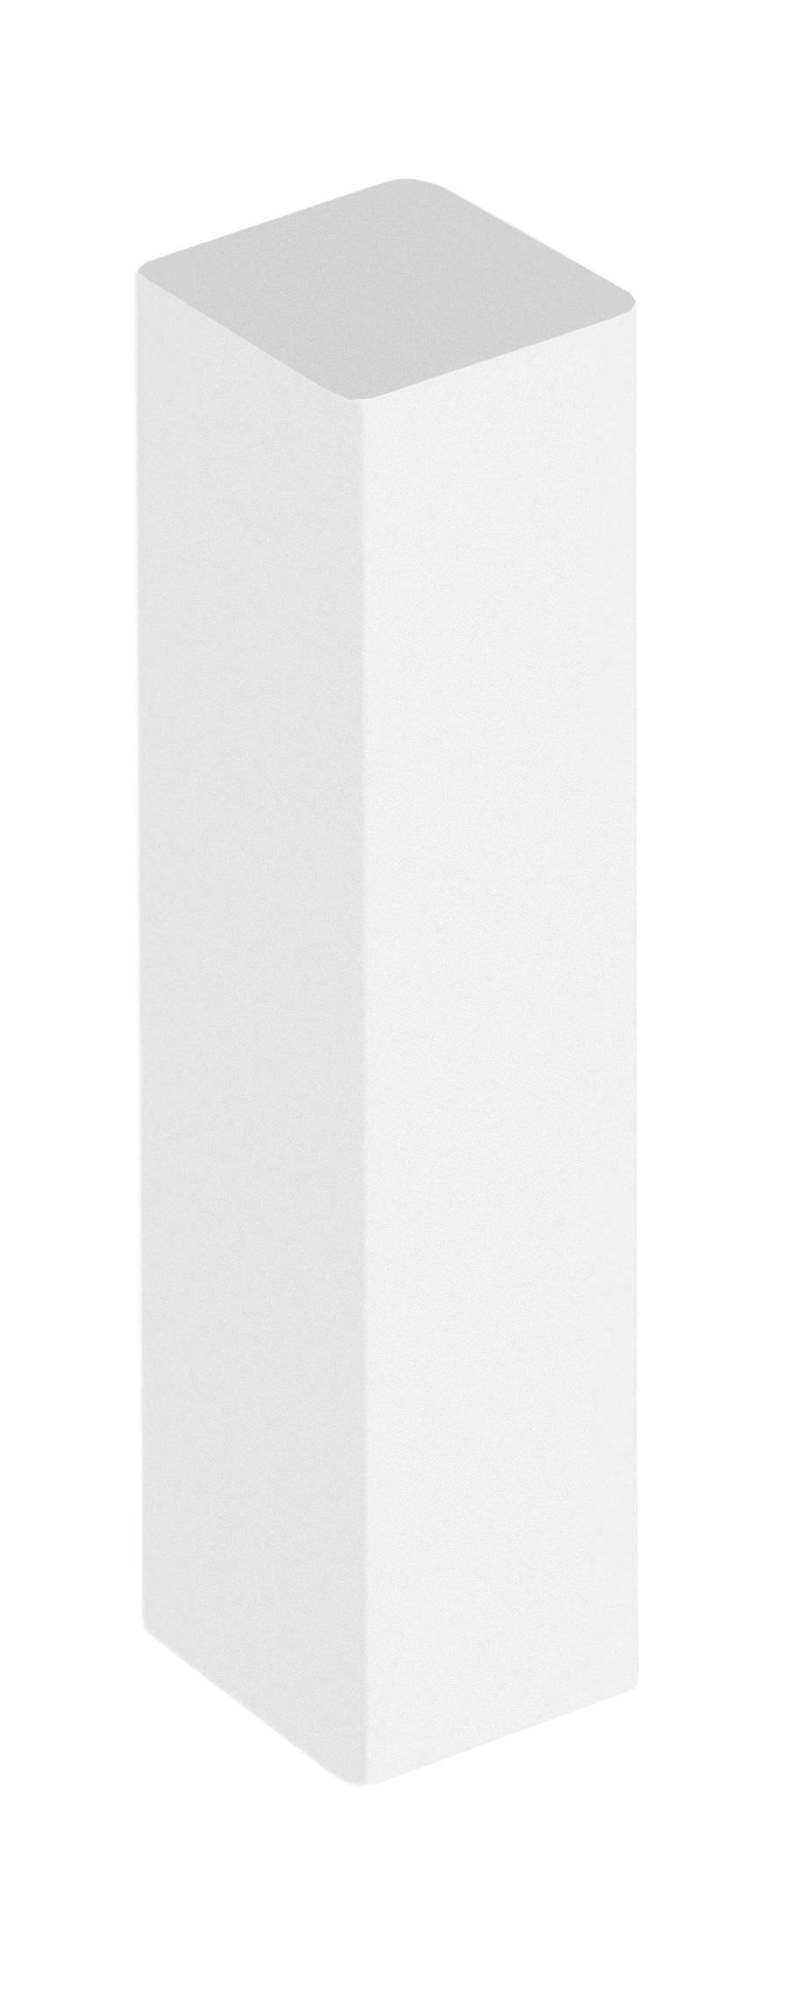 Universalūs grindjuostės kampai VEGA/DORA, baltos sp.  23 x 23 x 152 mm